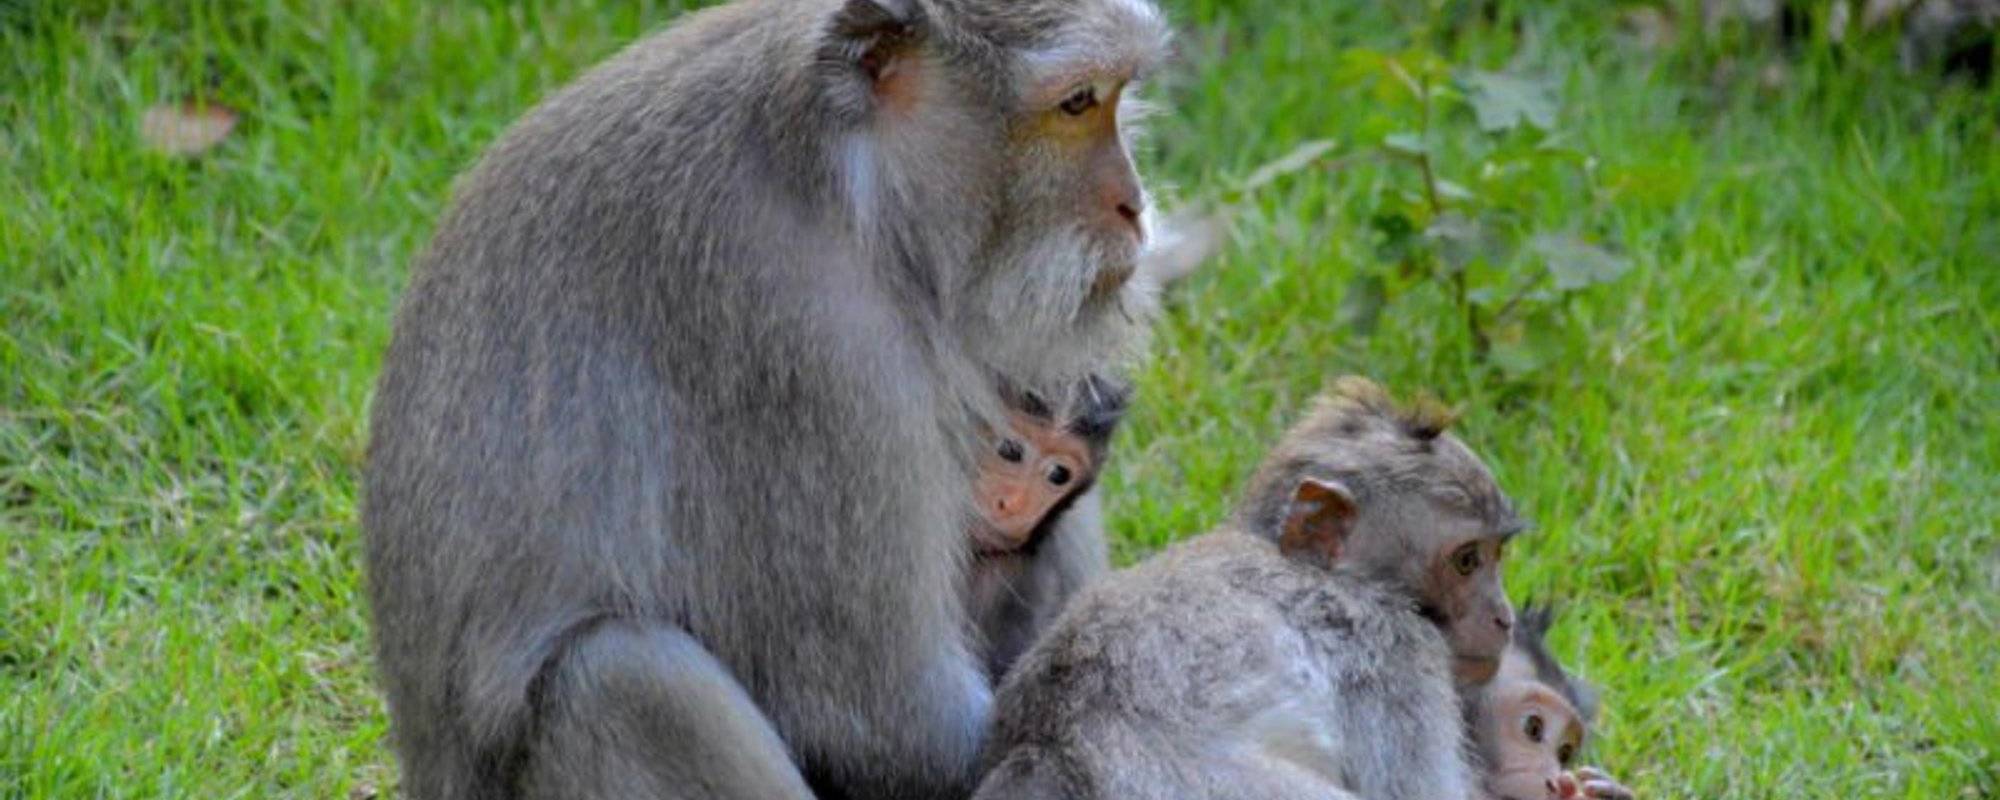 10 Reasons to Visit Ubud Monkey Forest